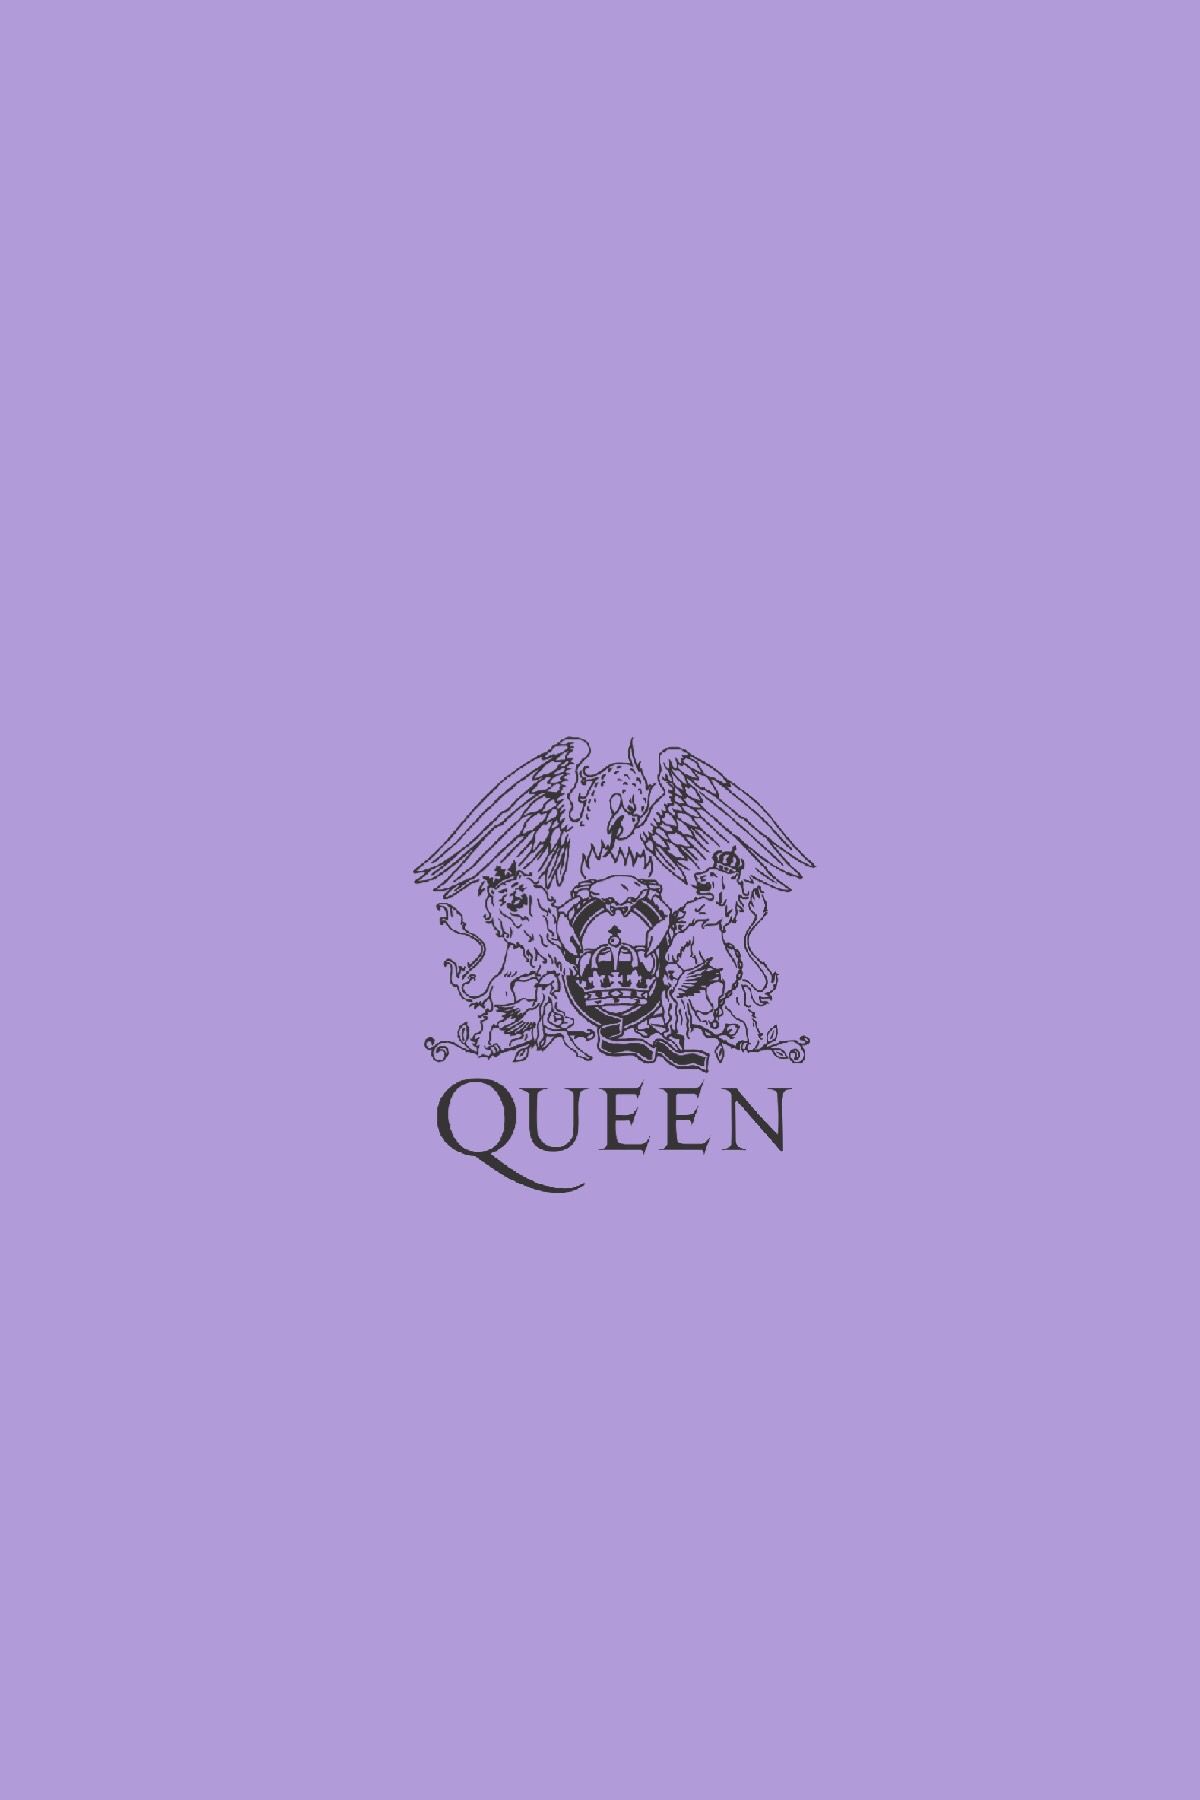 Aesthetic Queen Wallpapers